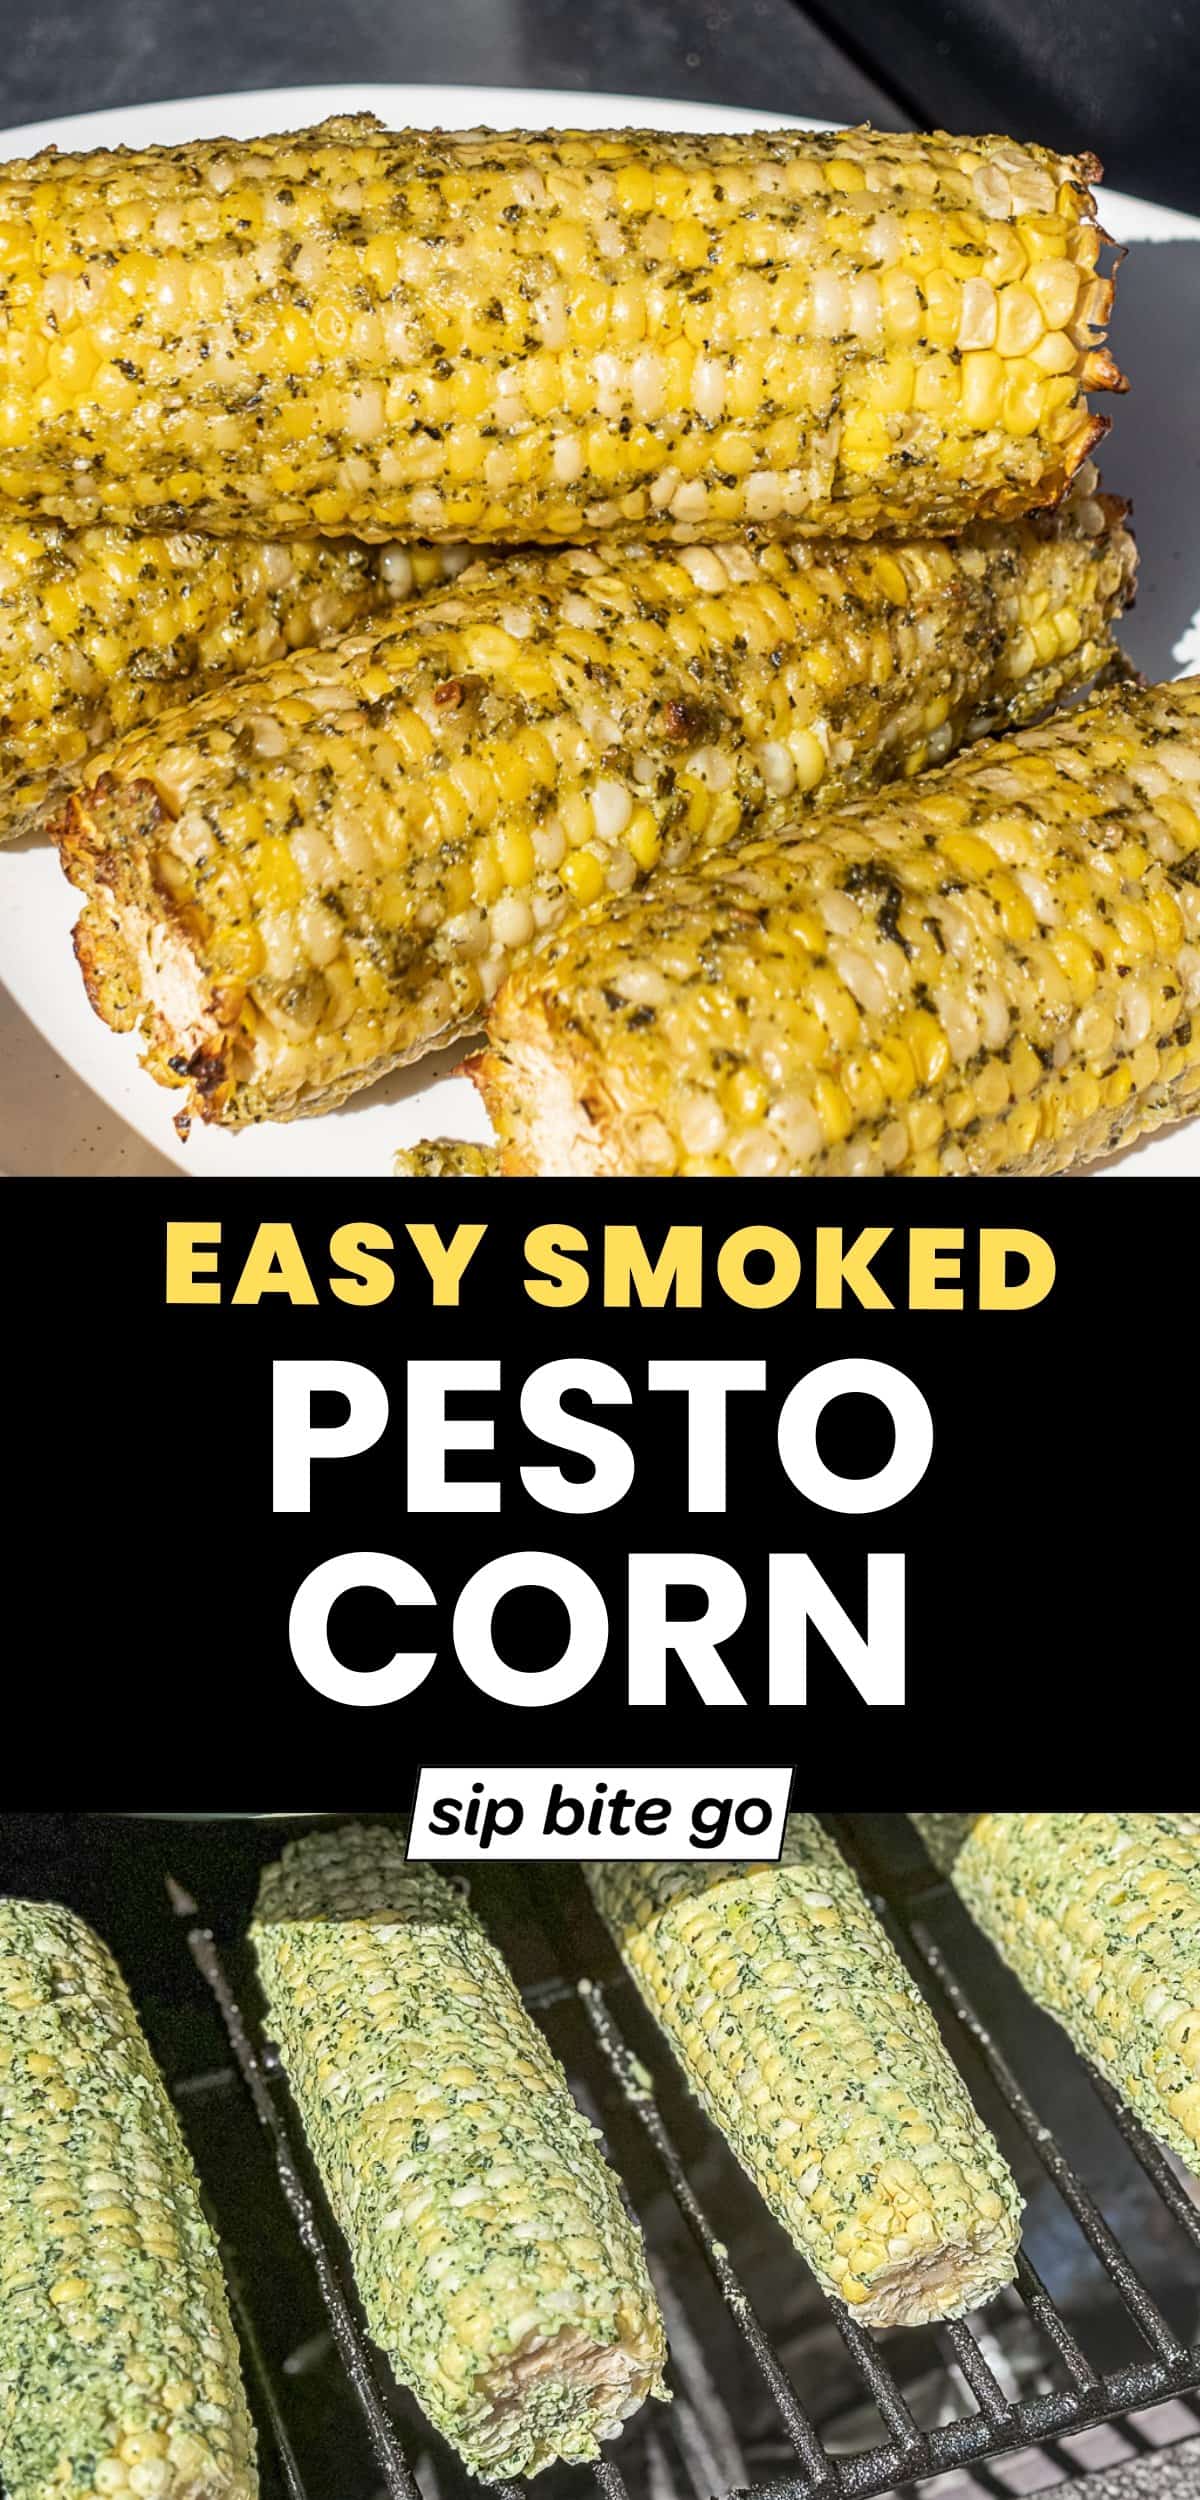 Traeger Smoked Corn on Cob with Pesto